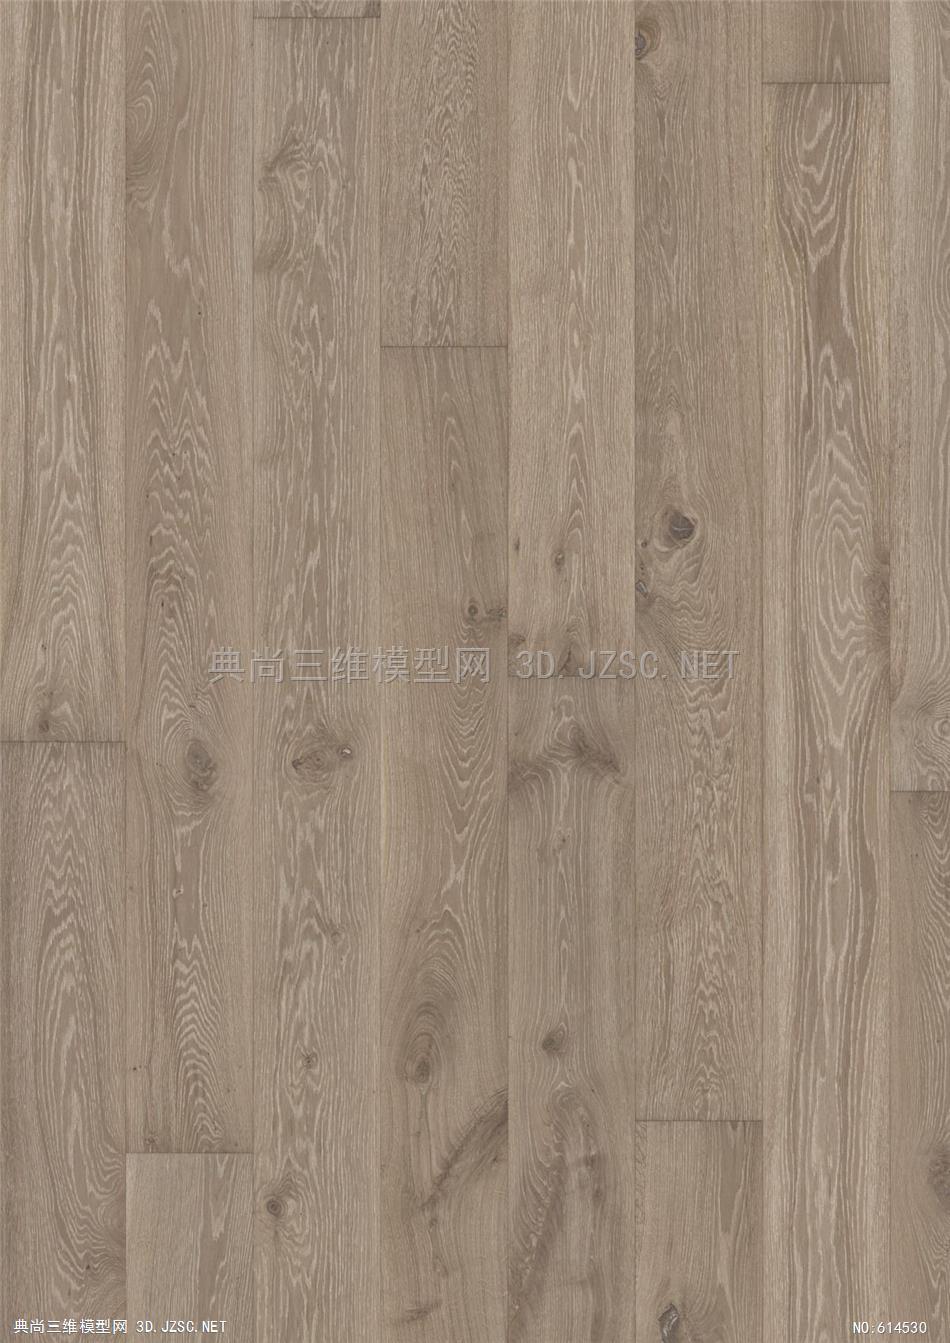 木饰面 木纹 木材  高清材质贴图 (330)